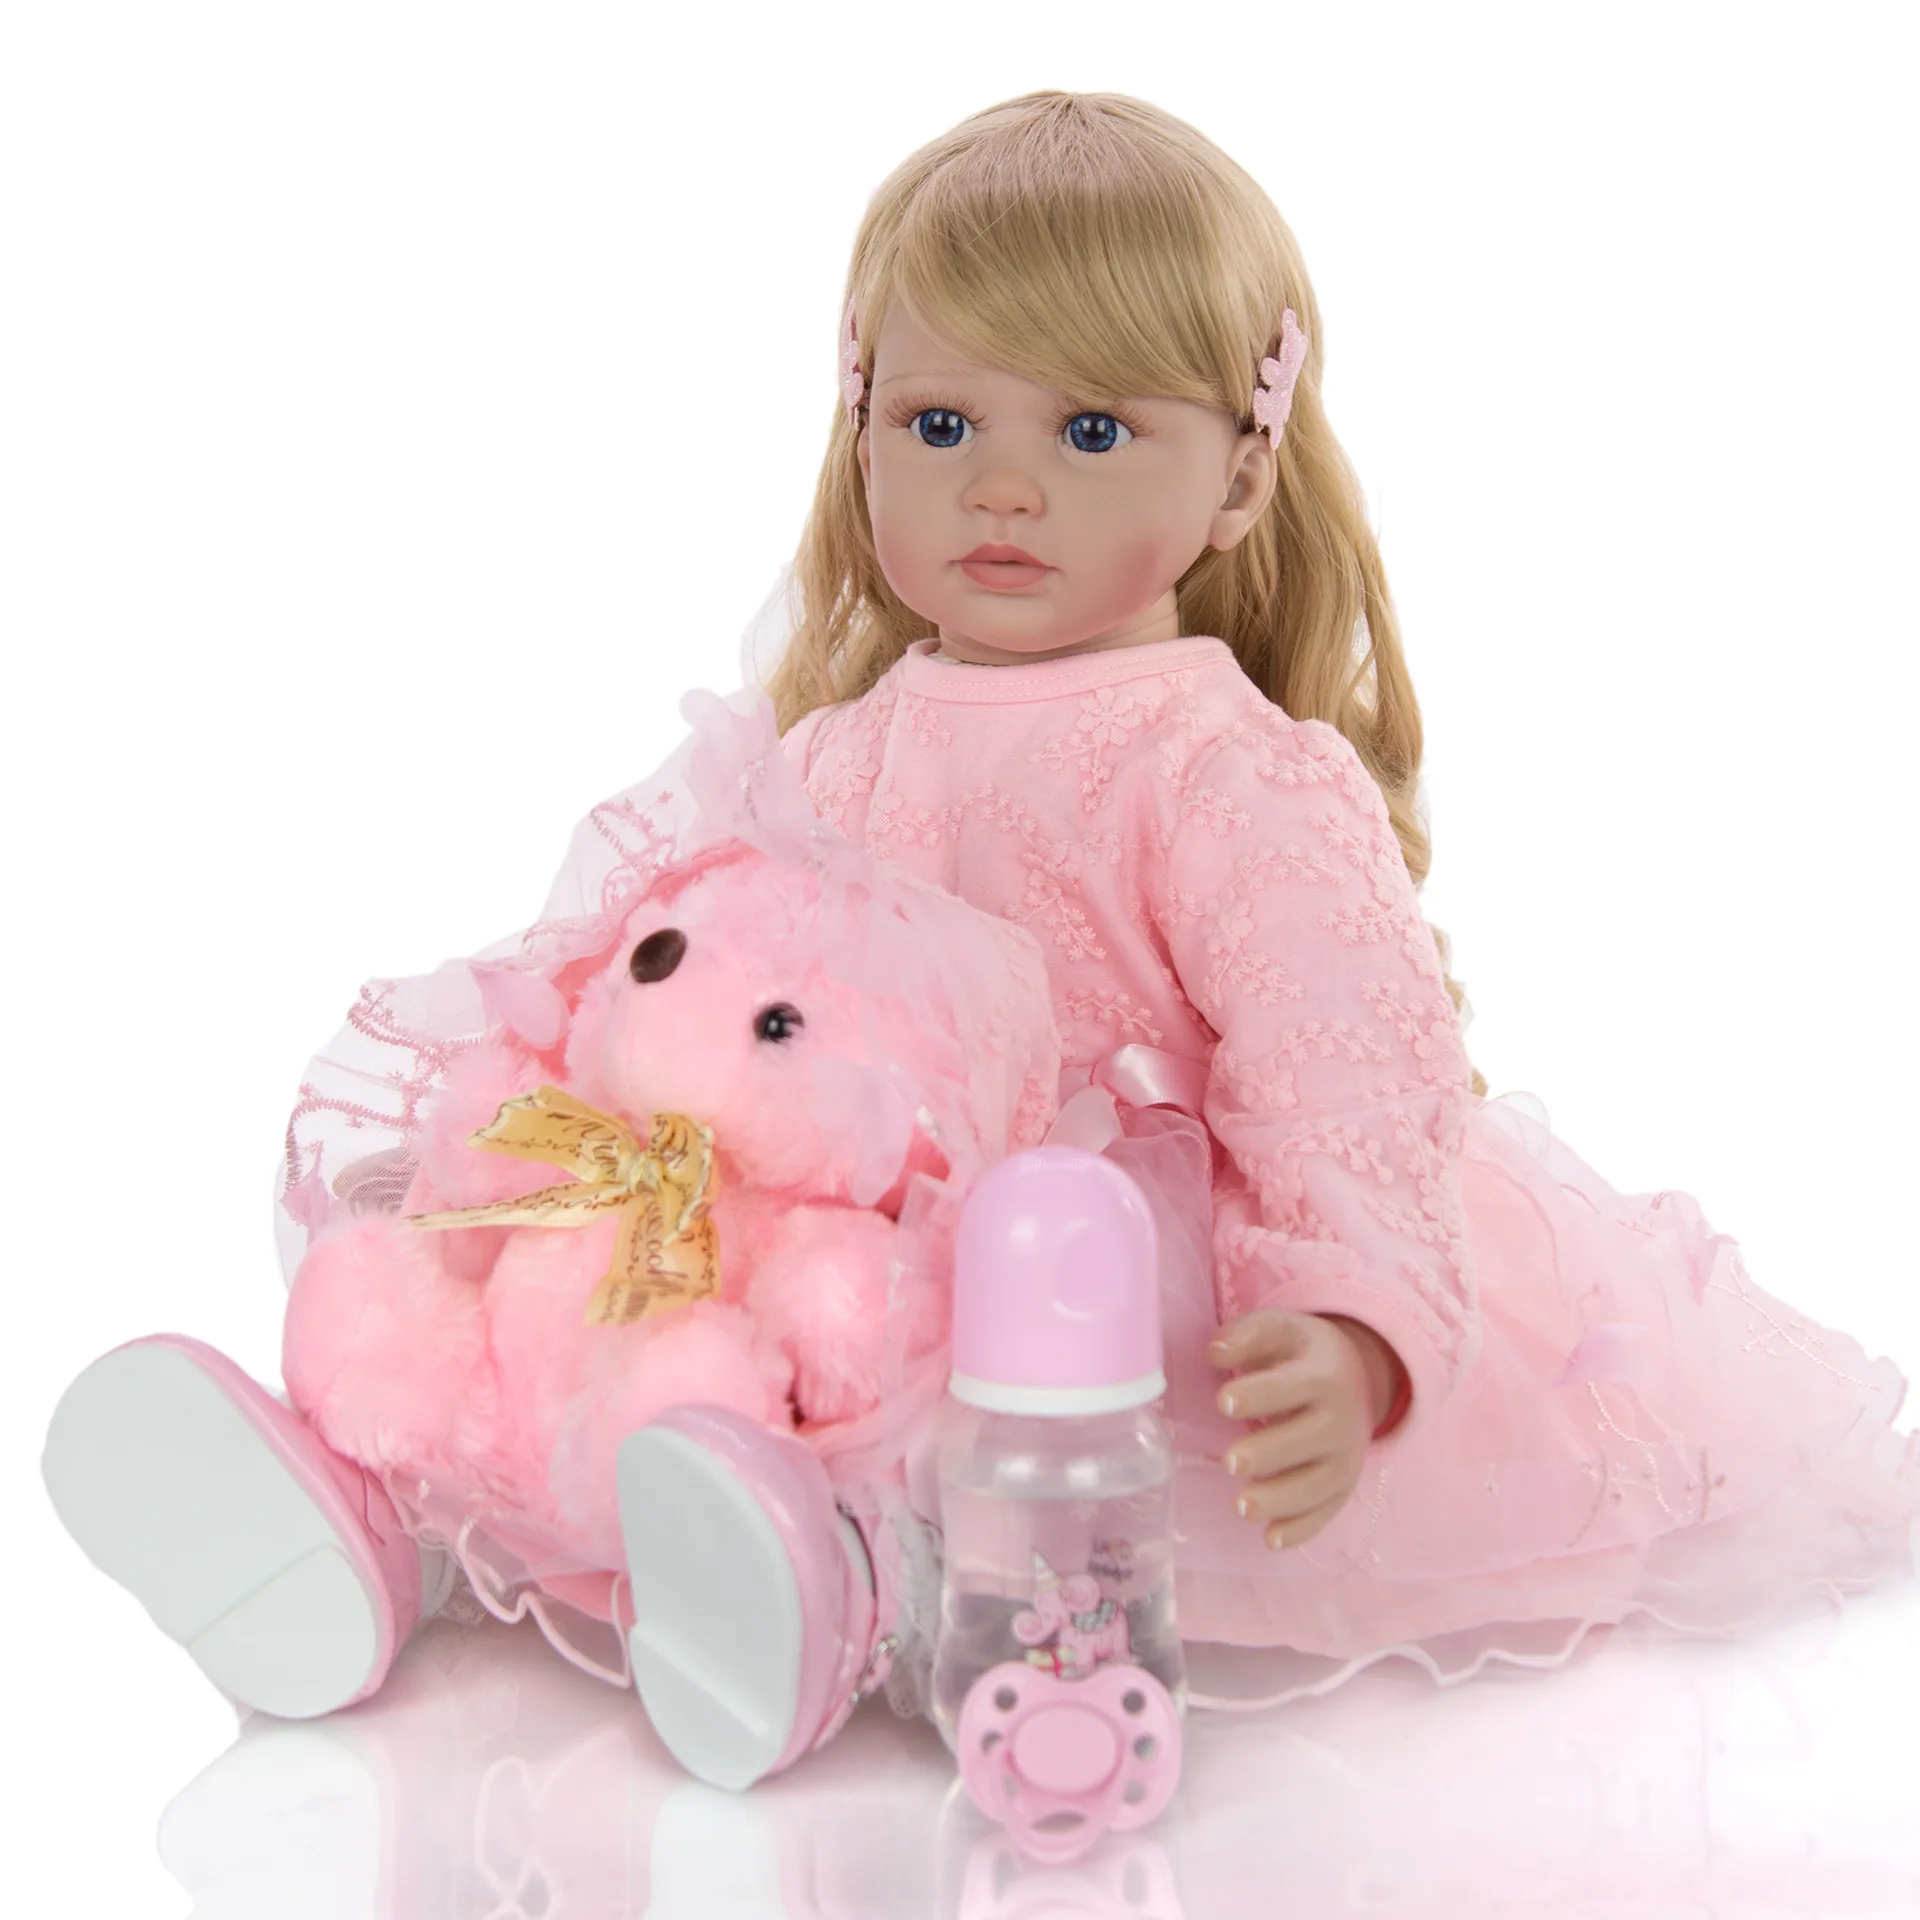 Кукла npk 24 дюйма младенец получивший новую жизнь 60 см силиконовый мягкий реалистический для принцессы для девочки куклы для продажи в этническом стиле куклы для детей для дня рождения, Рождества, Gif